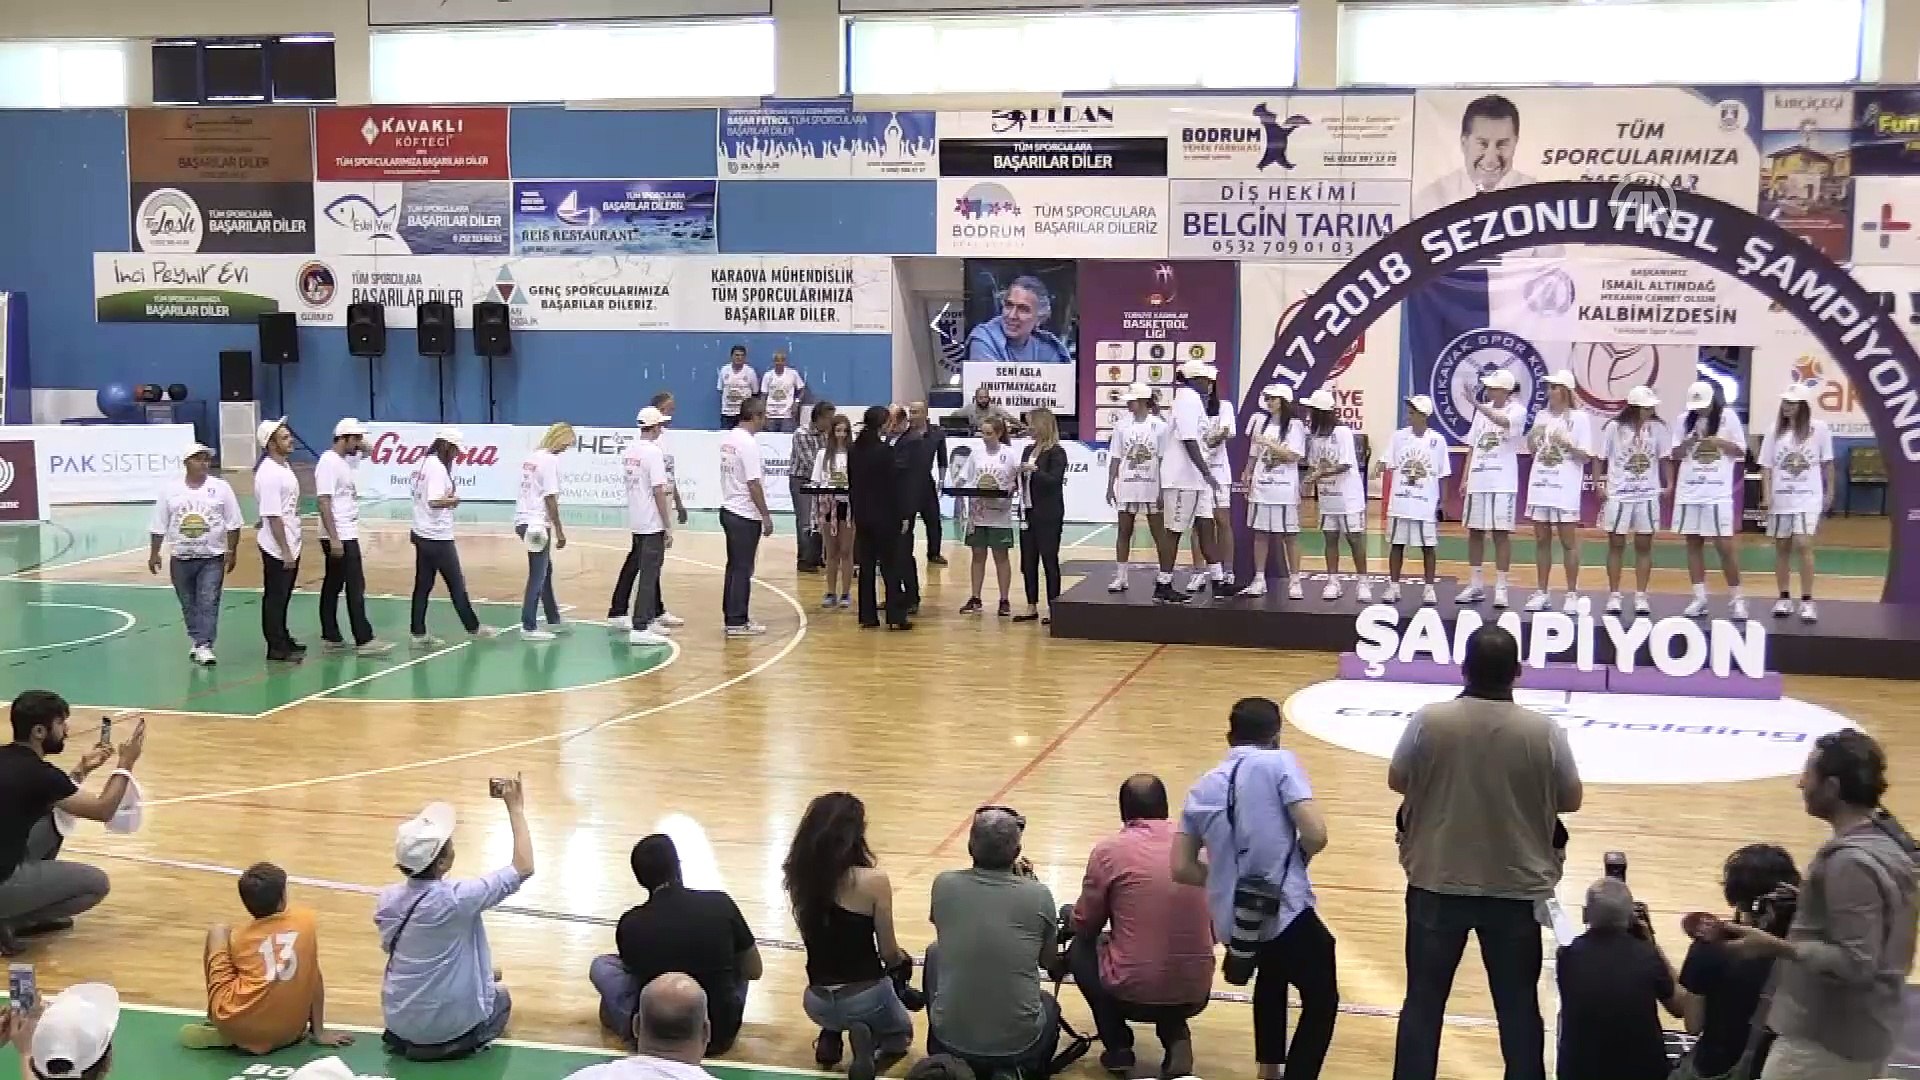 Kırçiçeği Bodrum Basketbol kupasını aldı - MUĞLA - Dailymotion Video